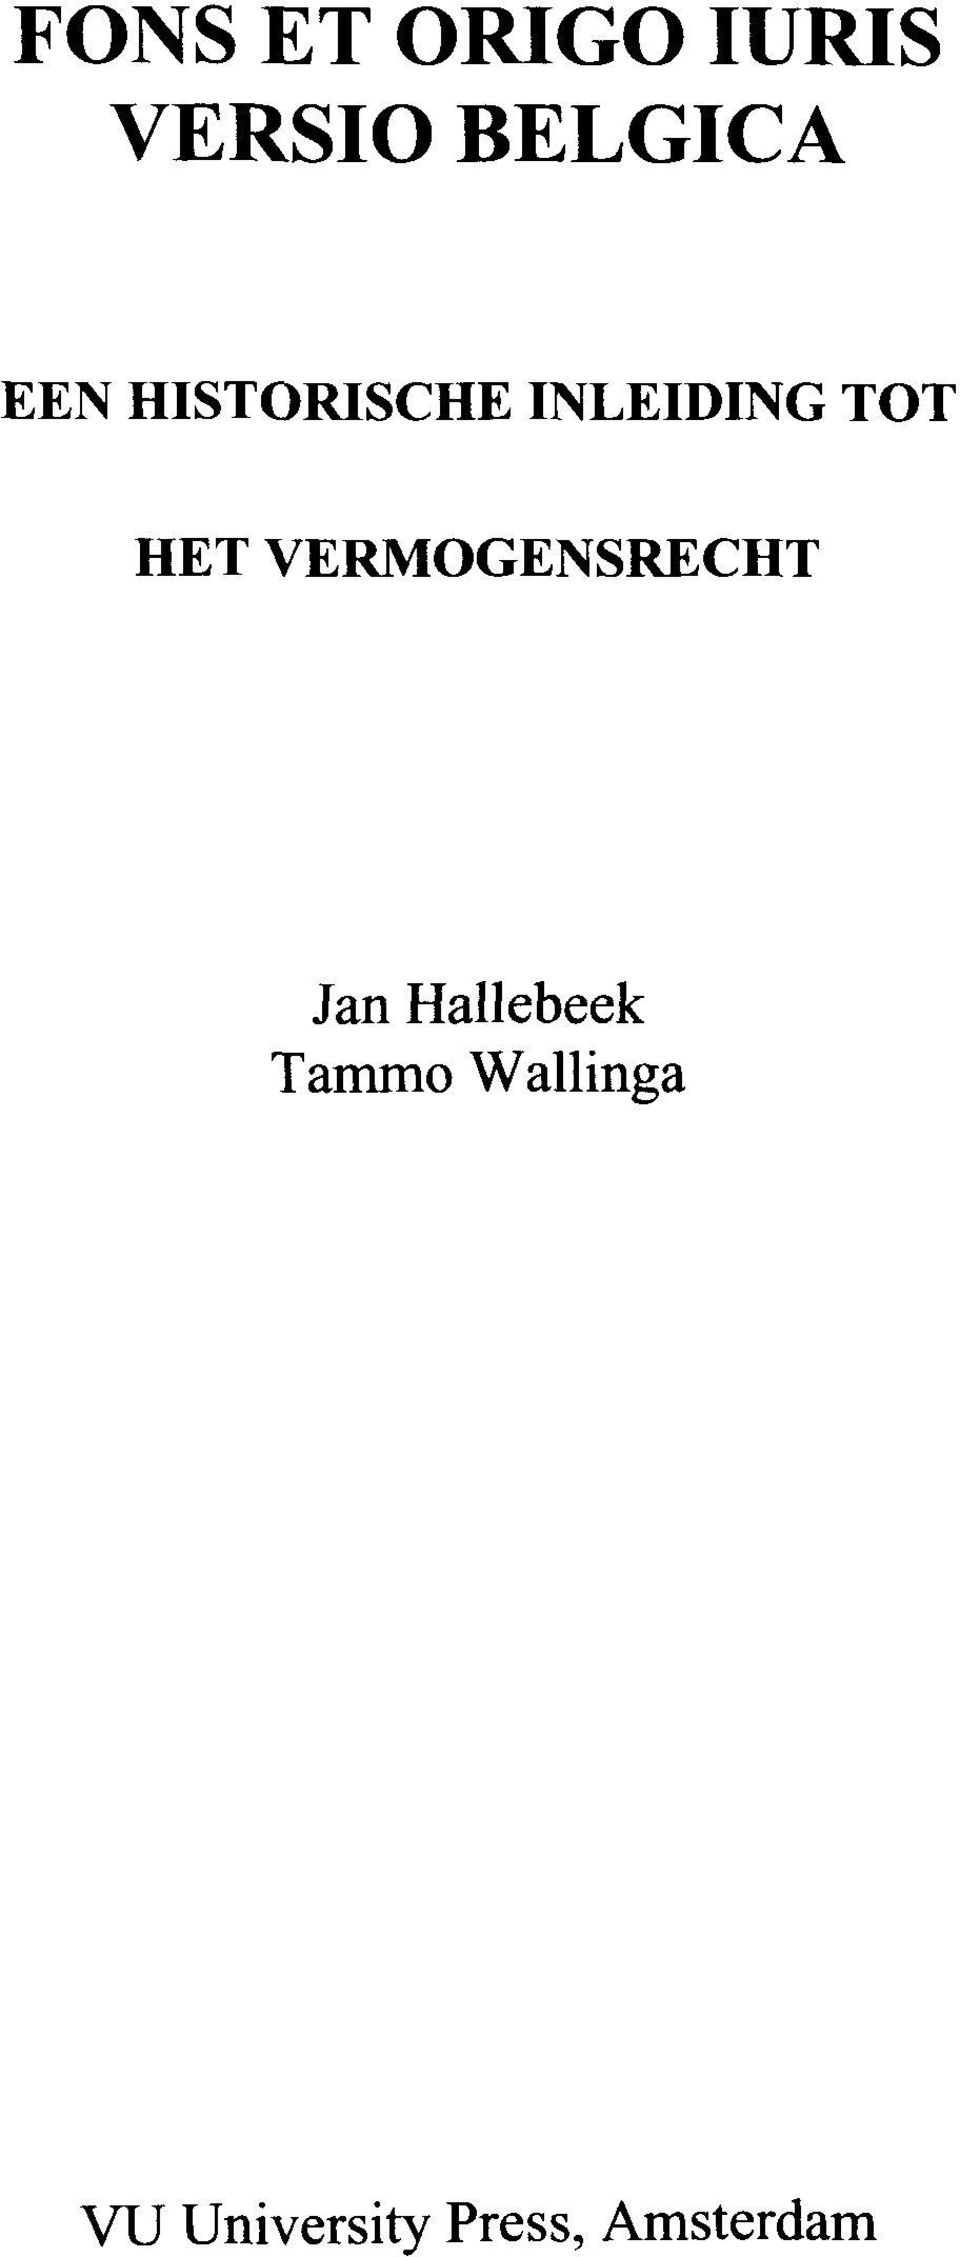 VERMOGENSRECHT Jan Hallebeek Tammo